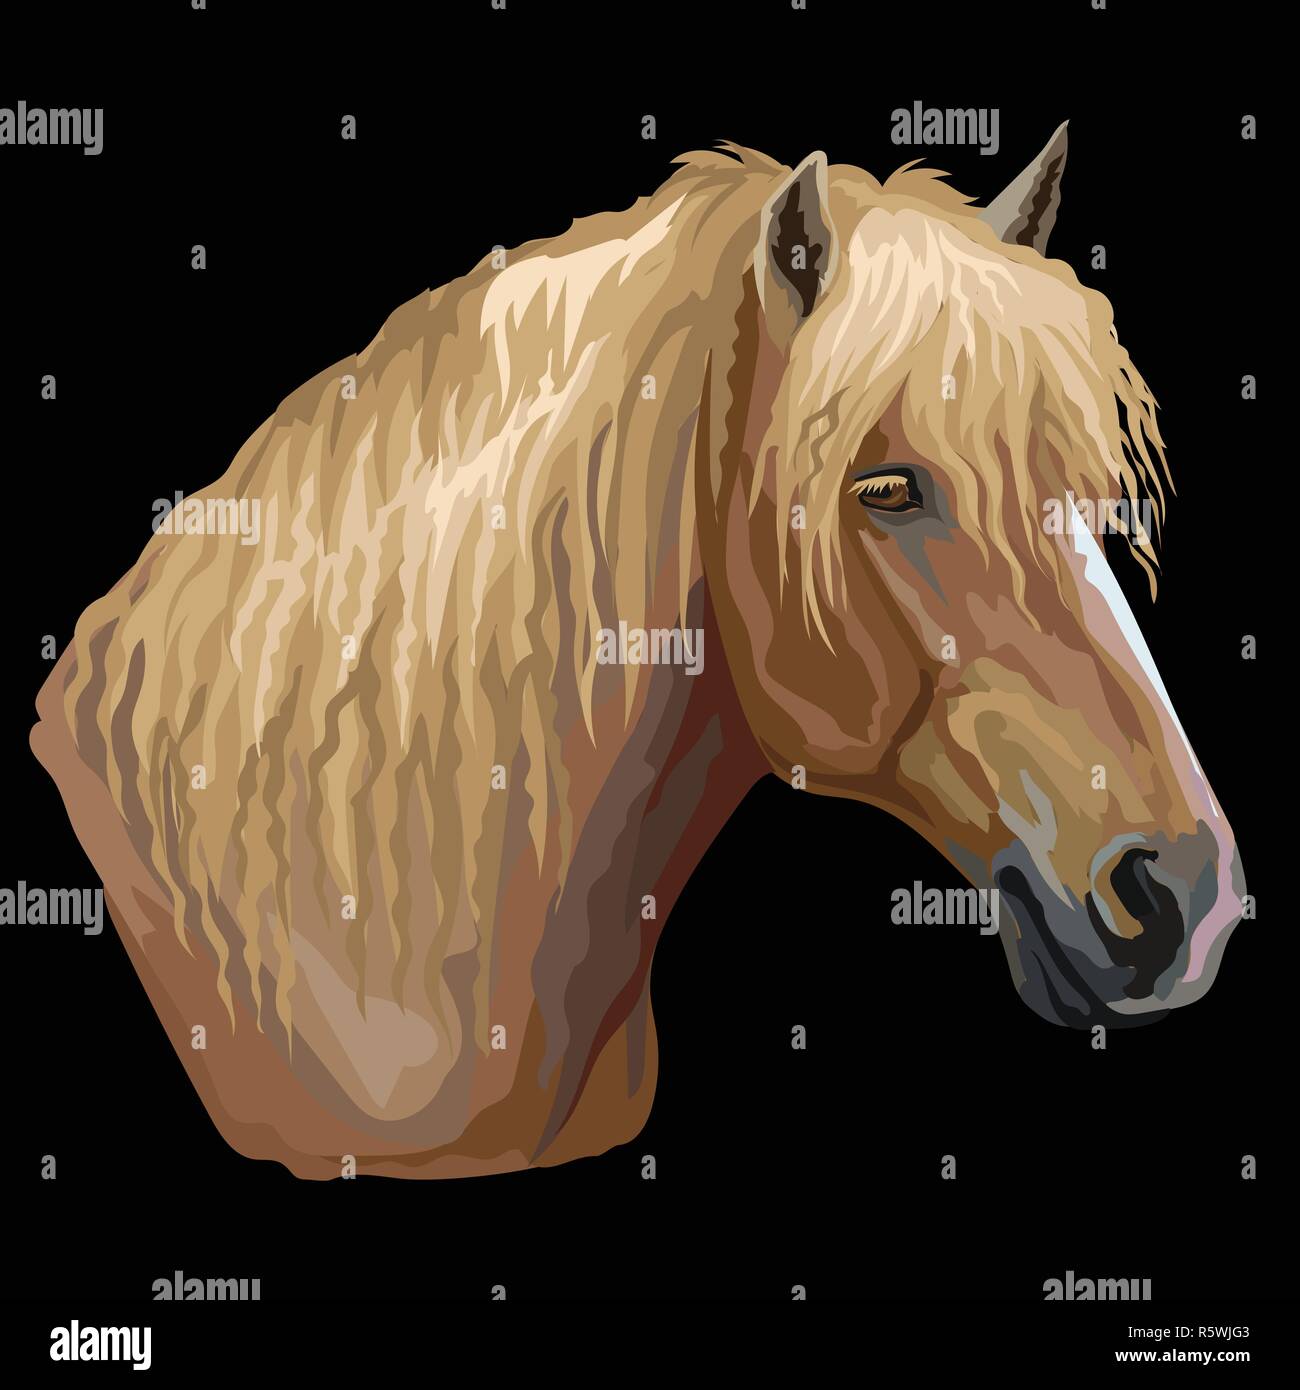 Ritratto colorato di russo di trazione pesante cavallo. Testa di cavallo in profilo vettore isolato del disegno a mano immagine su sfondo nero Illustrazione Vettoriale